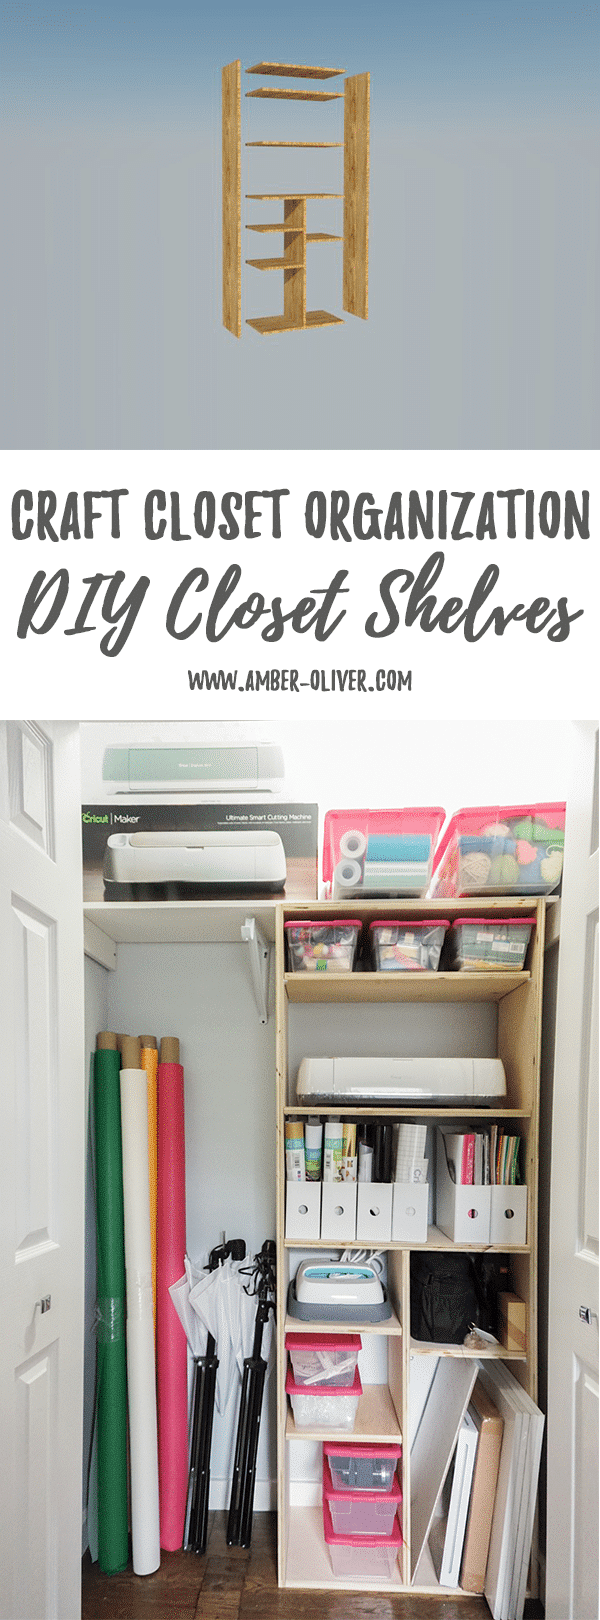 How to Build Closet Shelves - Tips For Craft Closet Organization!